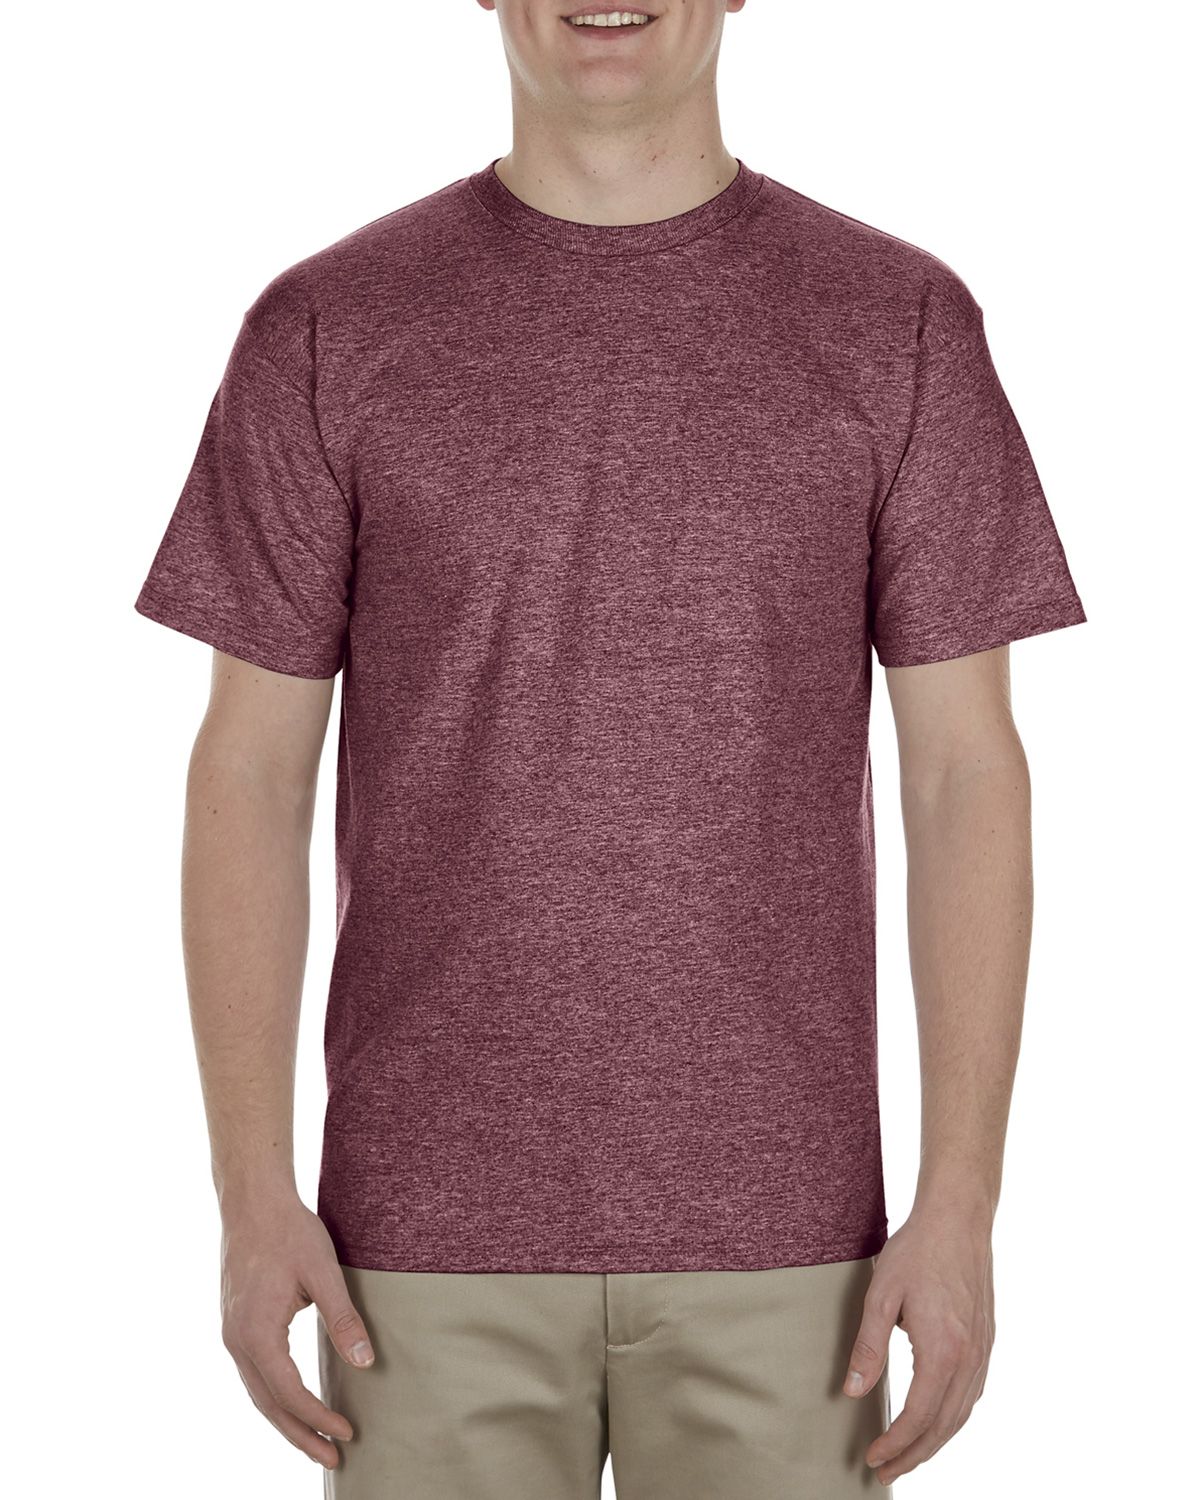 Alstyle AL1701 Men's 5.5 oz. 100% Soft Spun Cotton T-Shirt